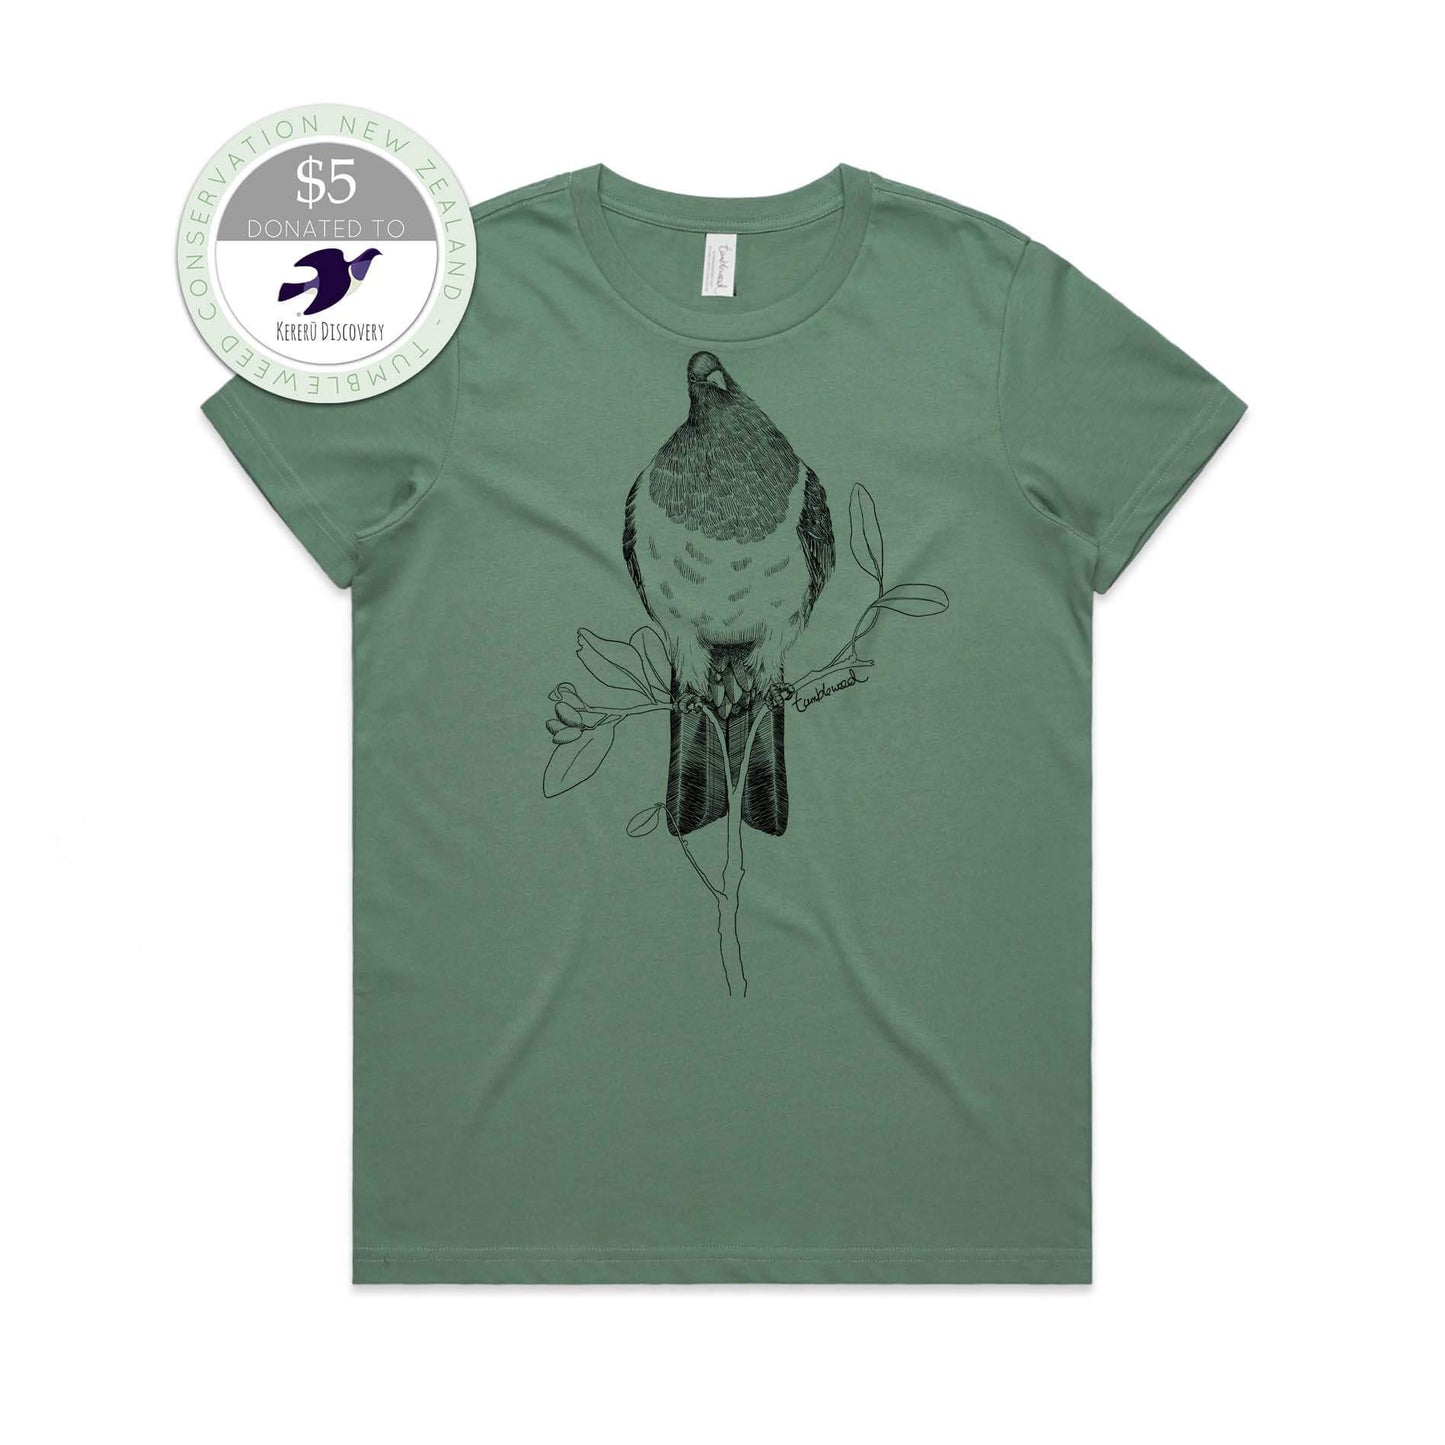 Sage, female t-shirt featuring a screen printed kereru design.